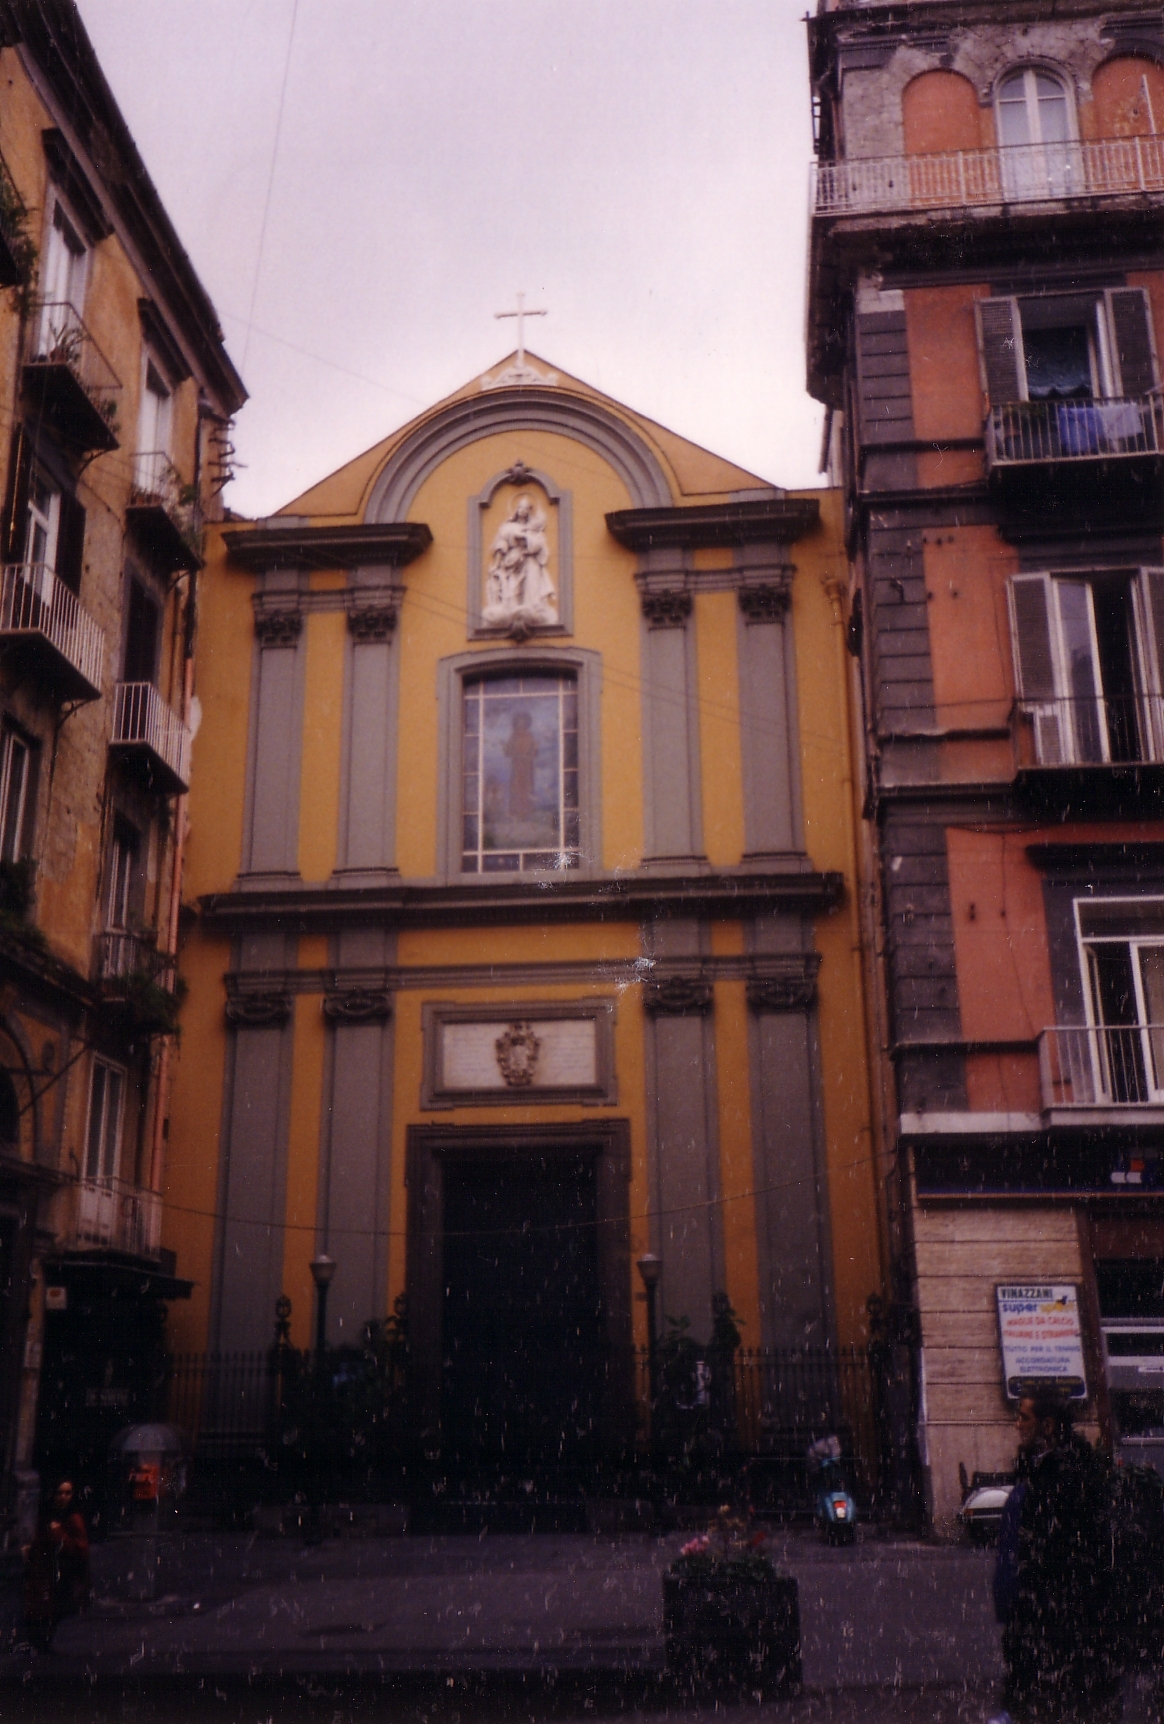 Chiesa di Santa Caterina a Chiaia (chiesa, parrocchiale) - Napoli (NA) 